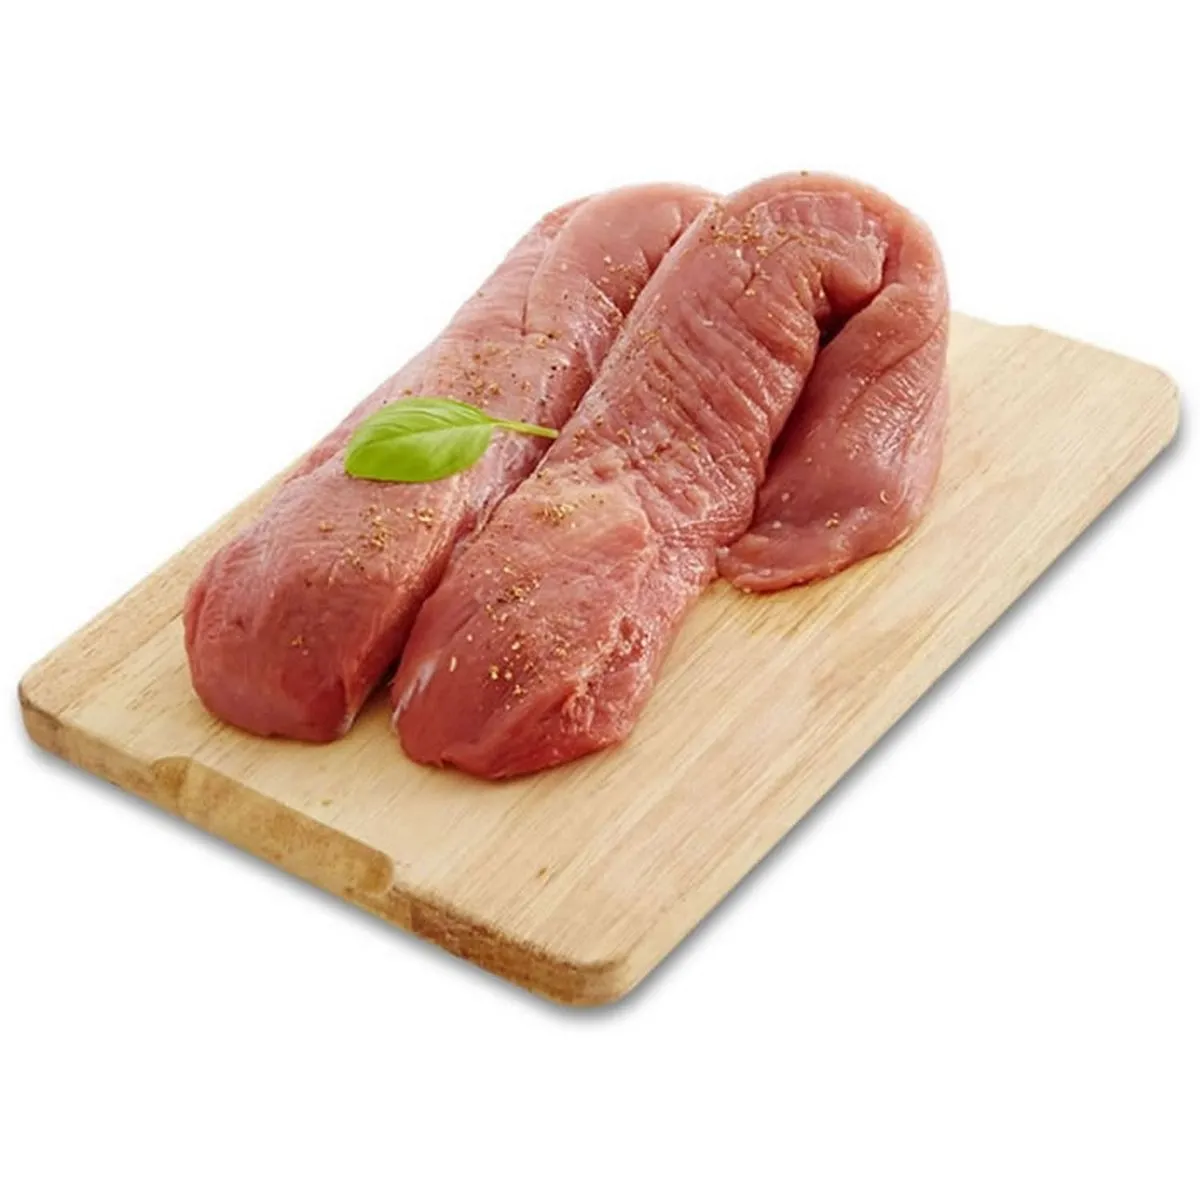 porc label rouge filière auchan "cultivons le bon" : filet mignon